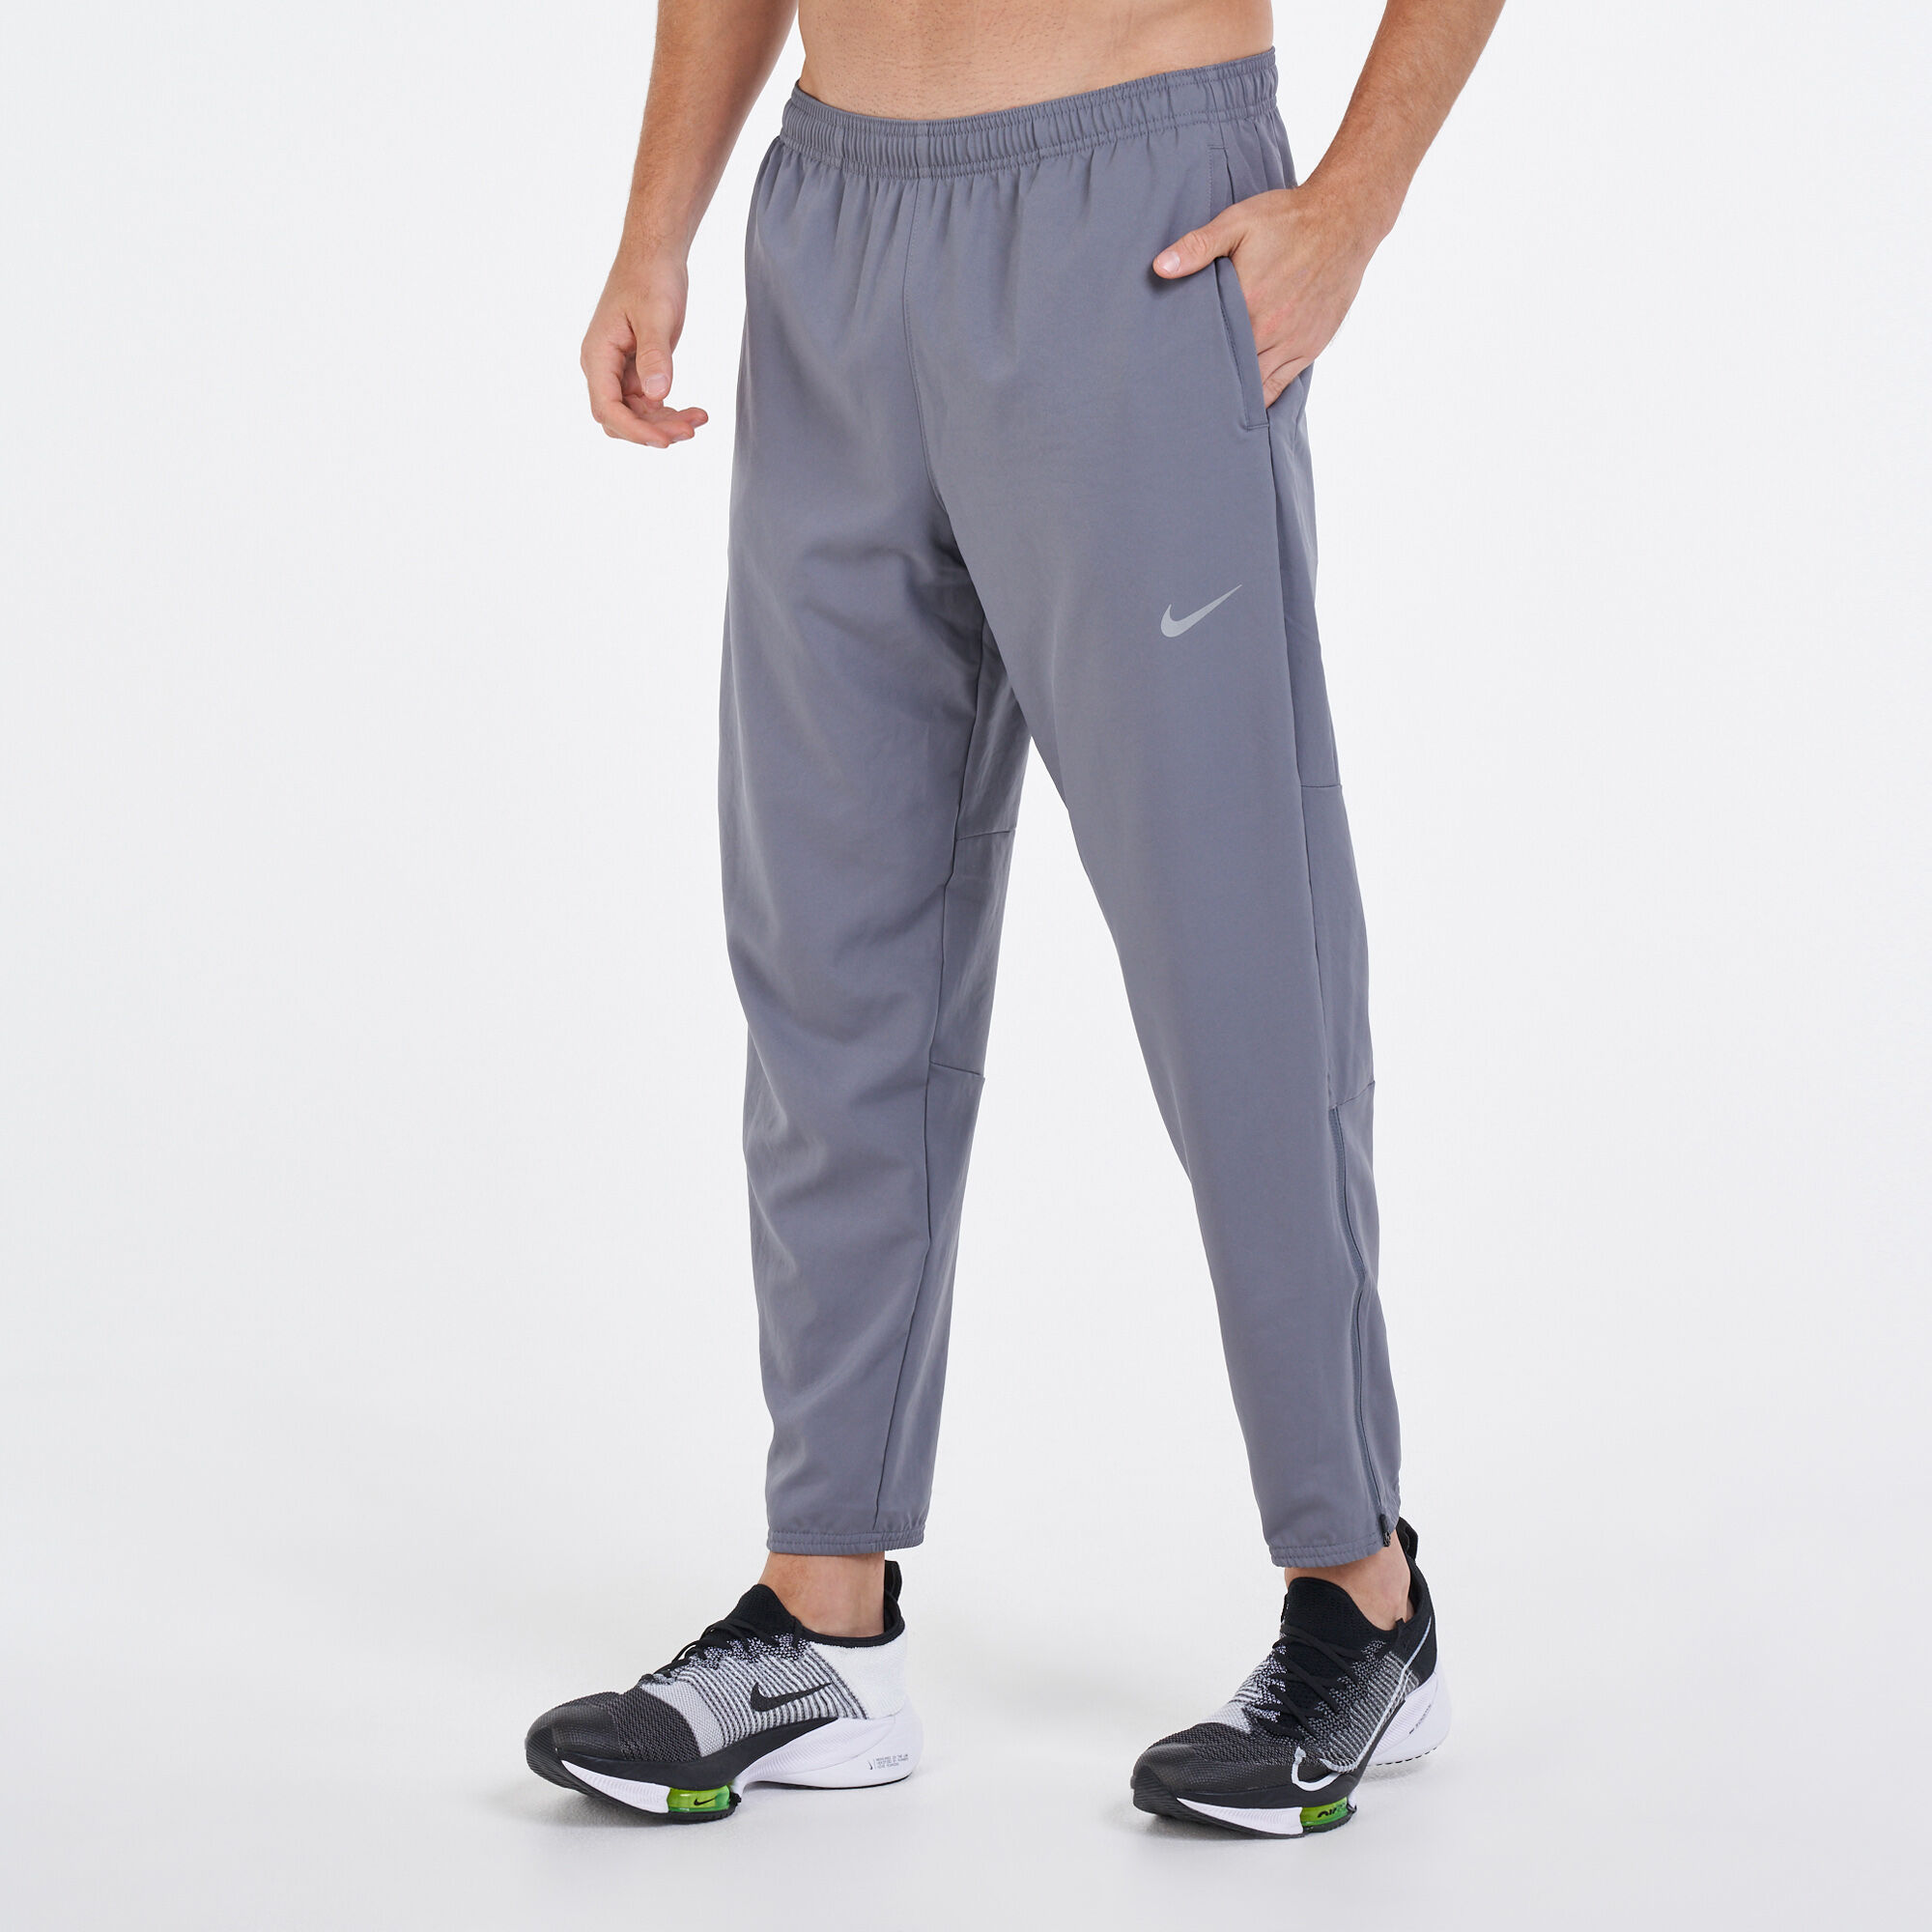 Nike Members: Buy 2, get 25% off Fleece Trousers. Nike SK